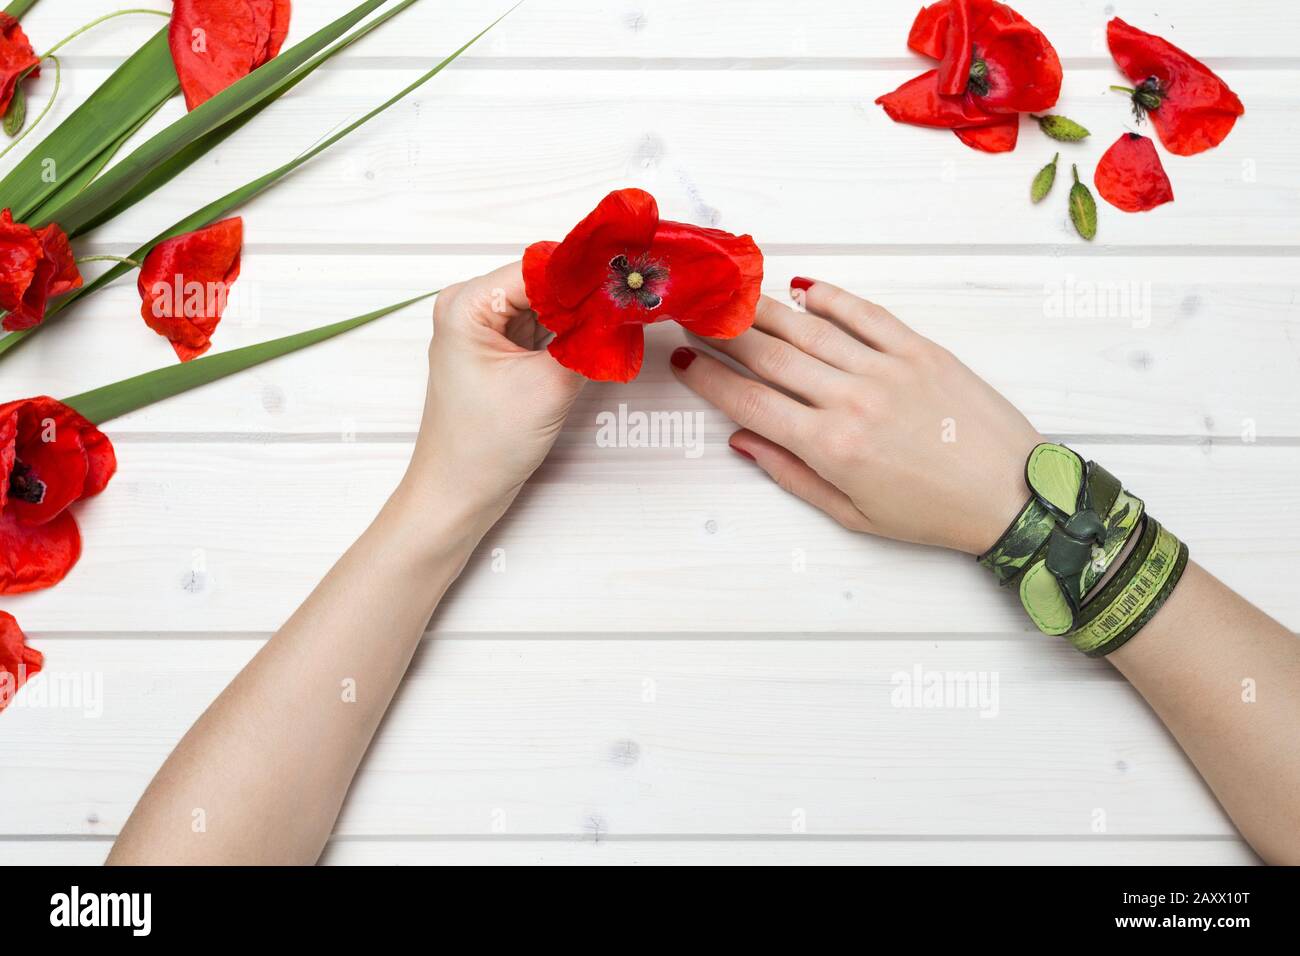 Prise de vue en grand angle d'une personne avec bracelets verts une fleur de pavot rouge Banque D'Images